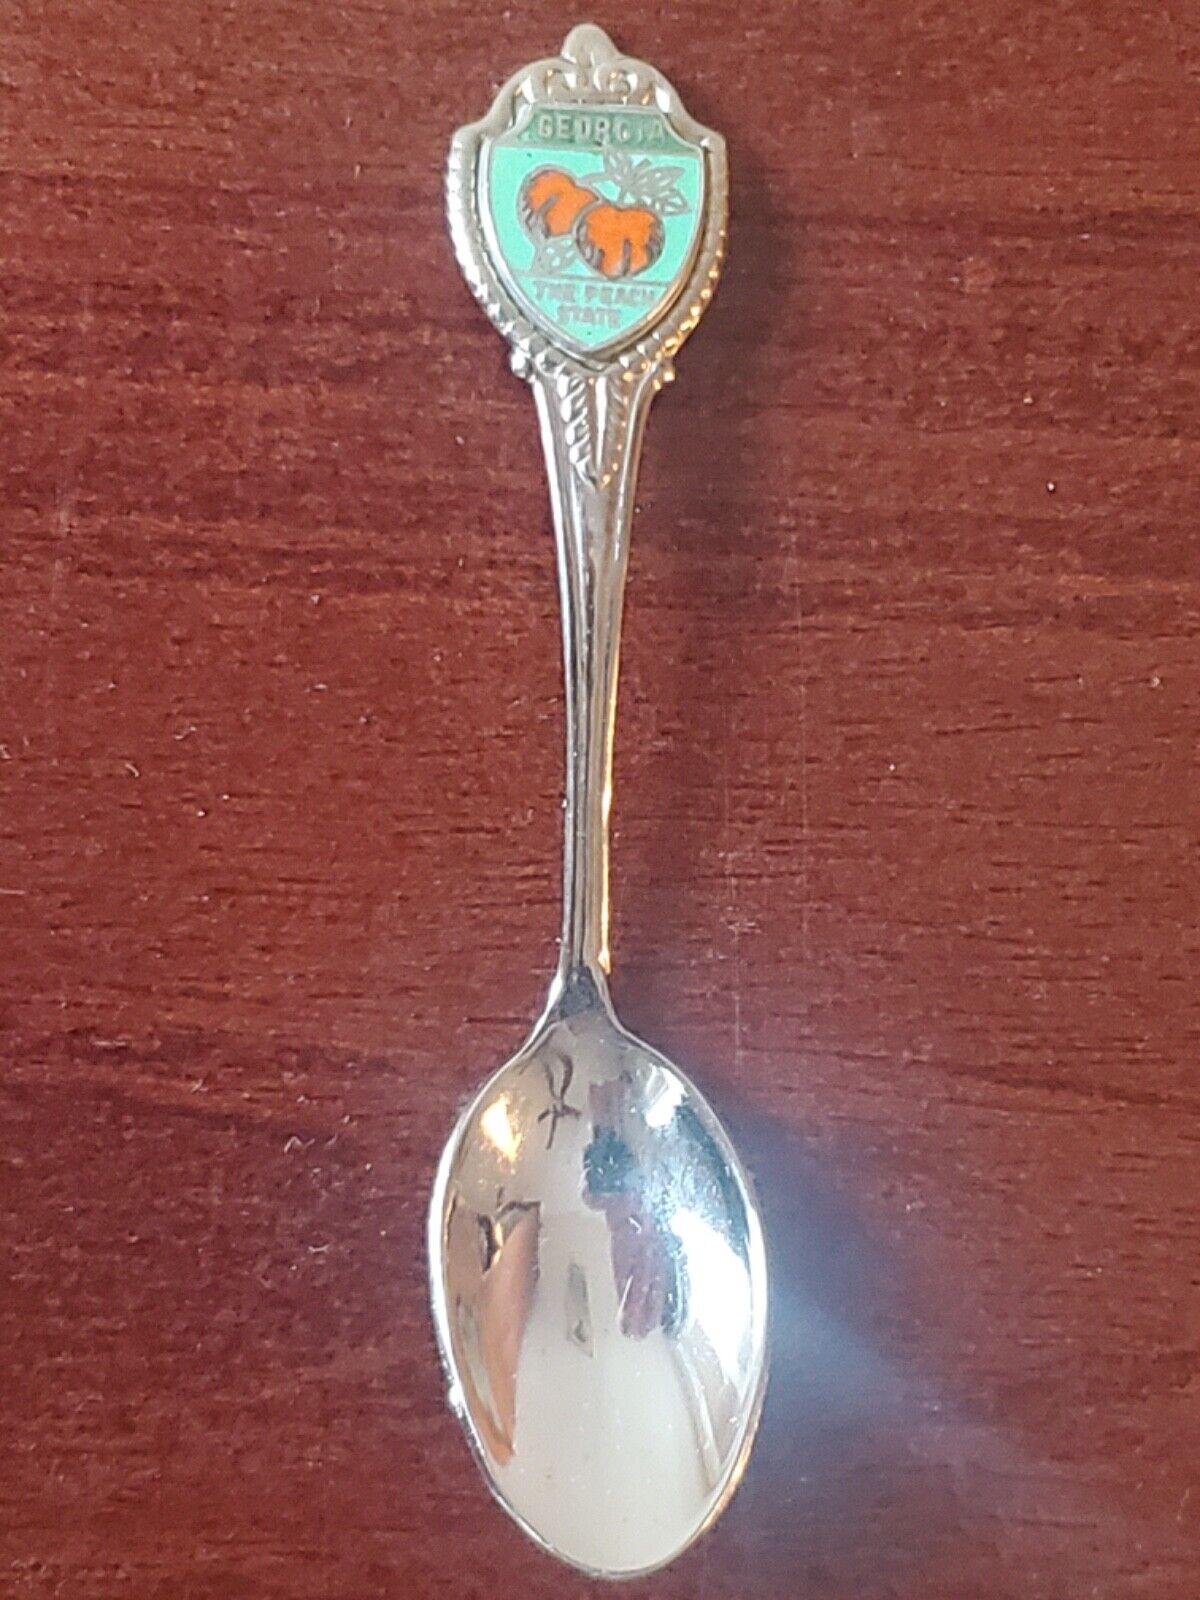 Georgia Souvenir Spoon Peach State Baby Spoon